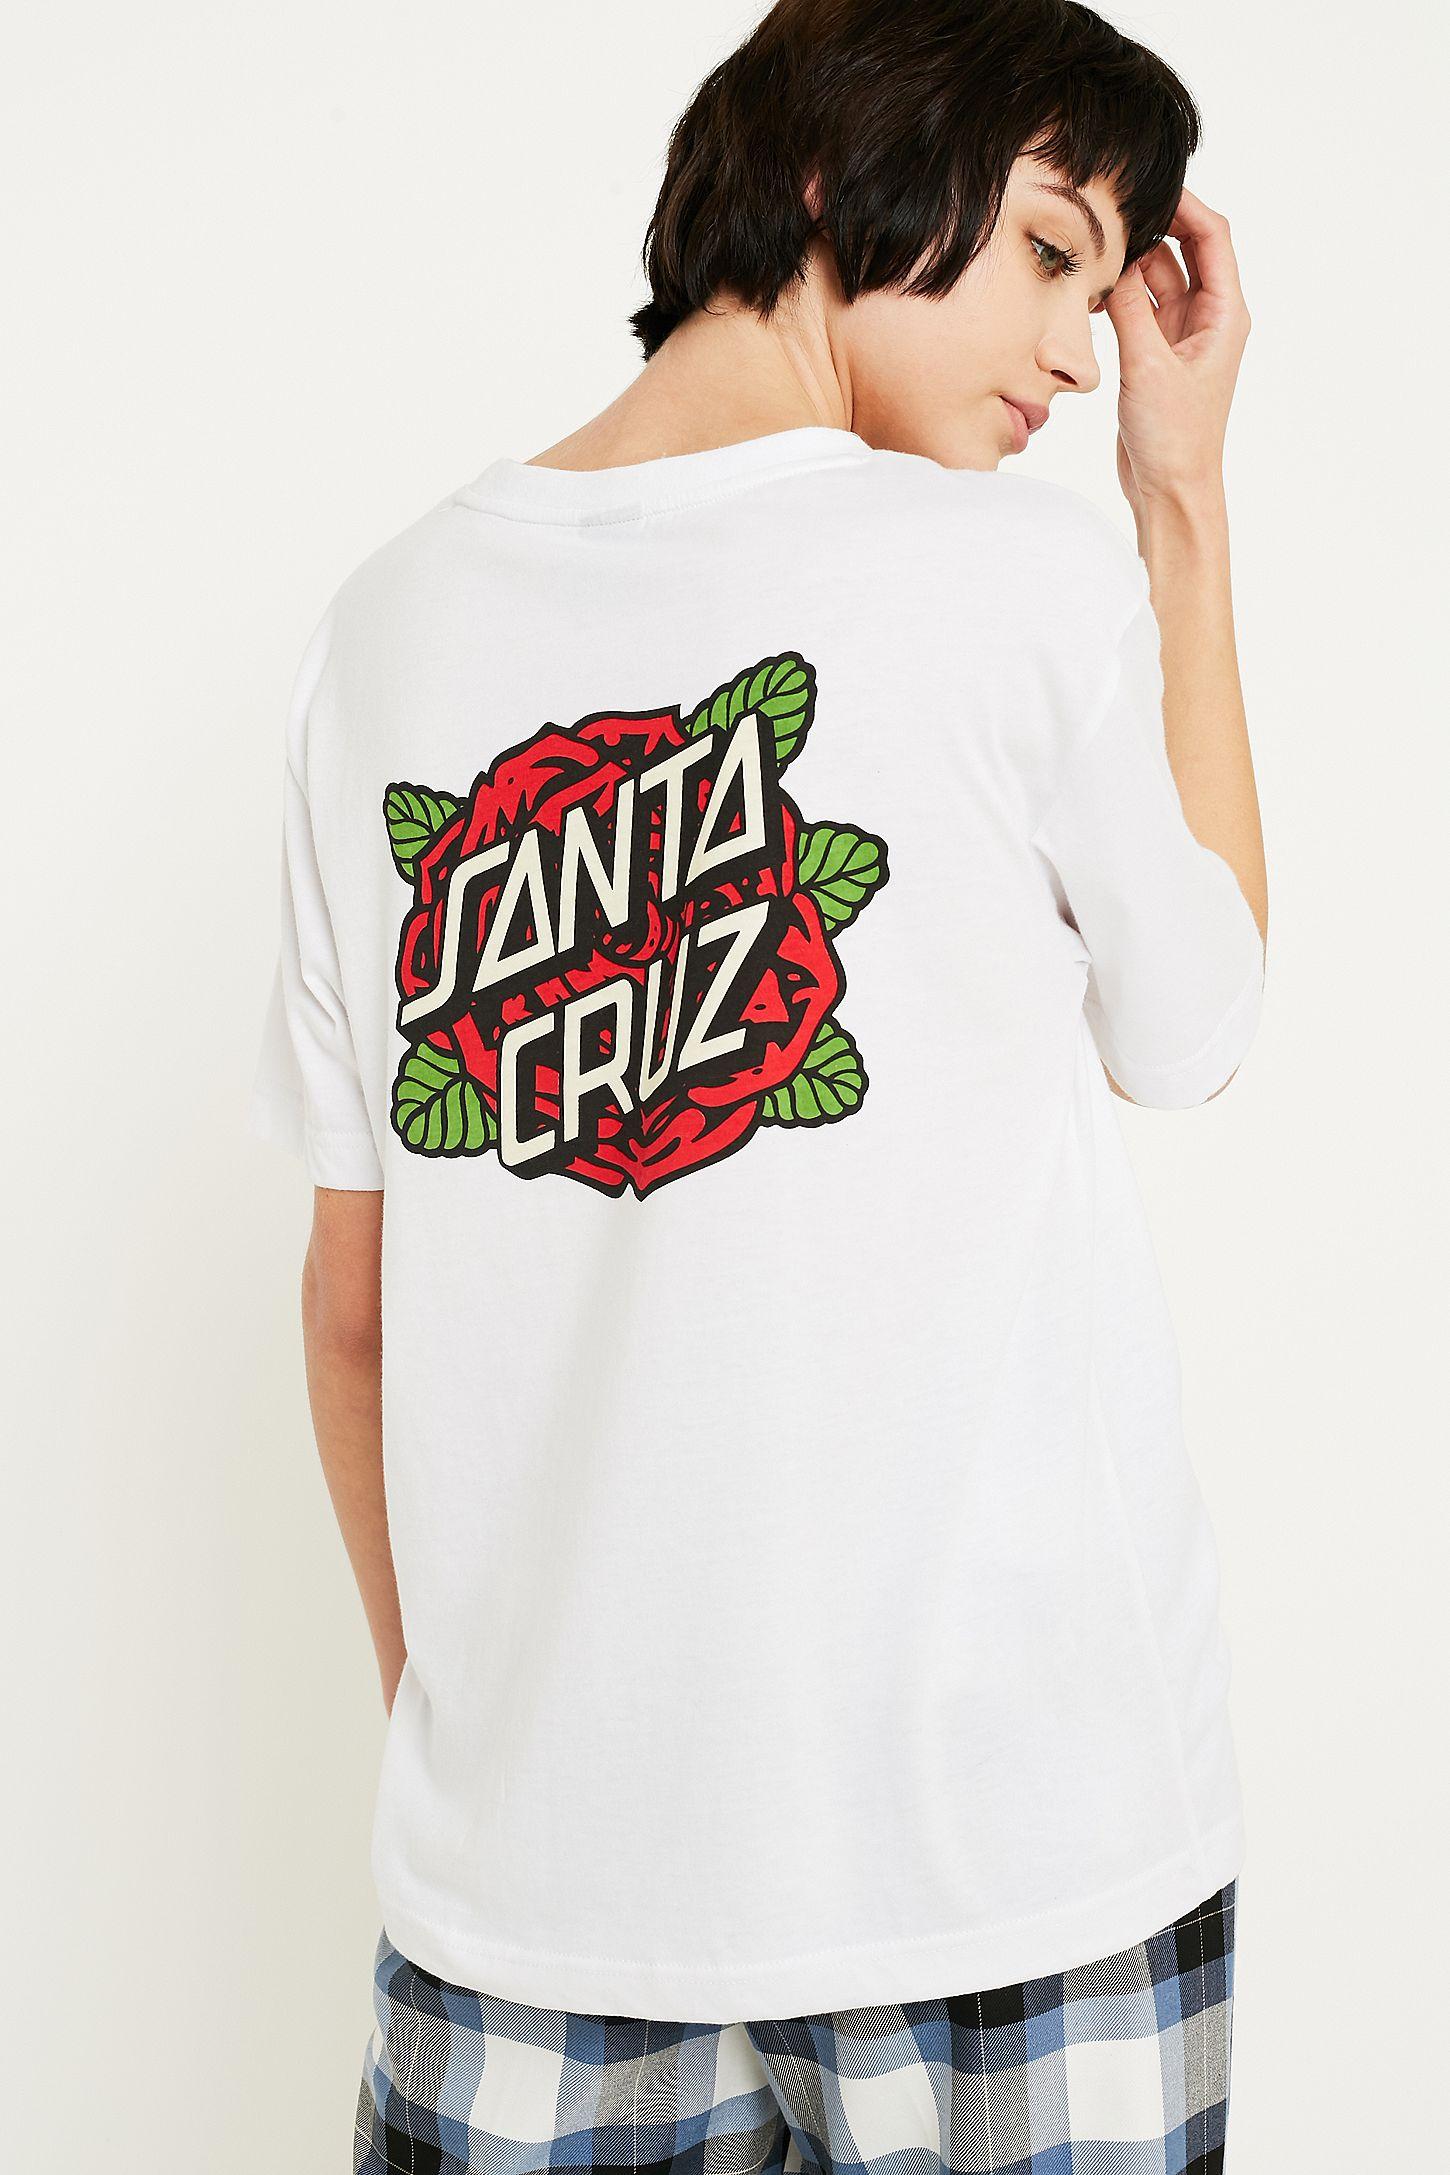 Santa Cruz Dot Logo - Santa Cruz Rose Dot Logo T Shirt. Urban Outfitters UK